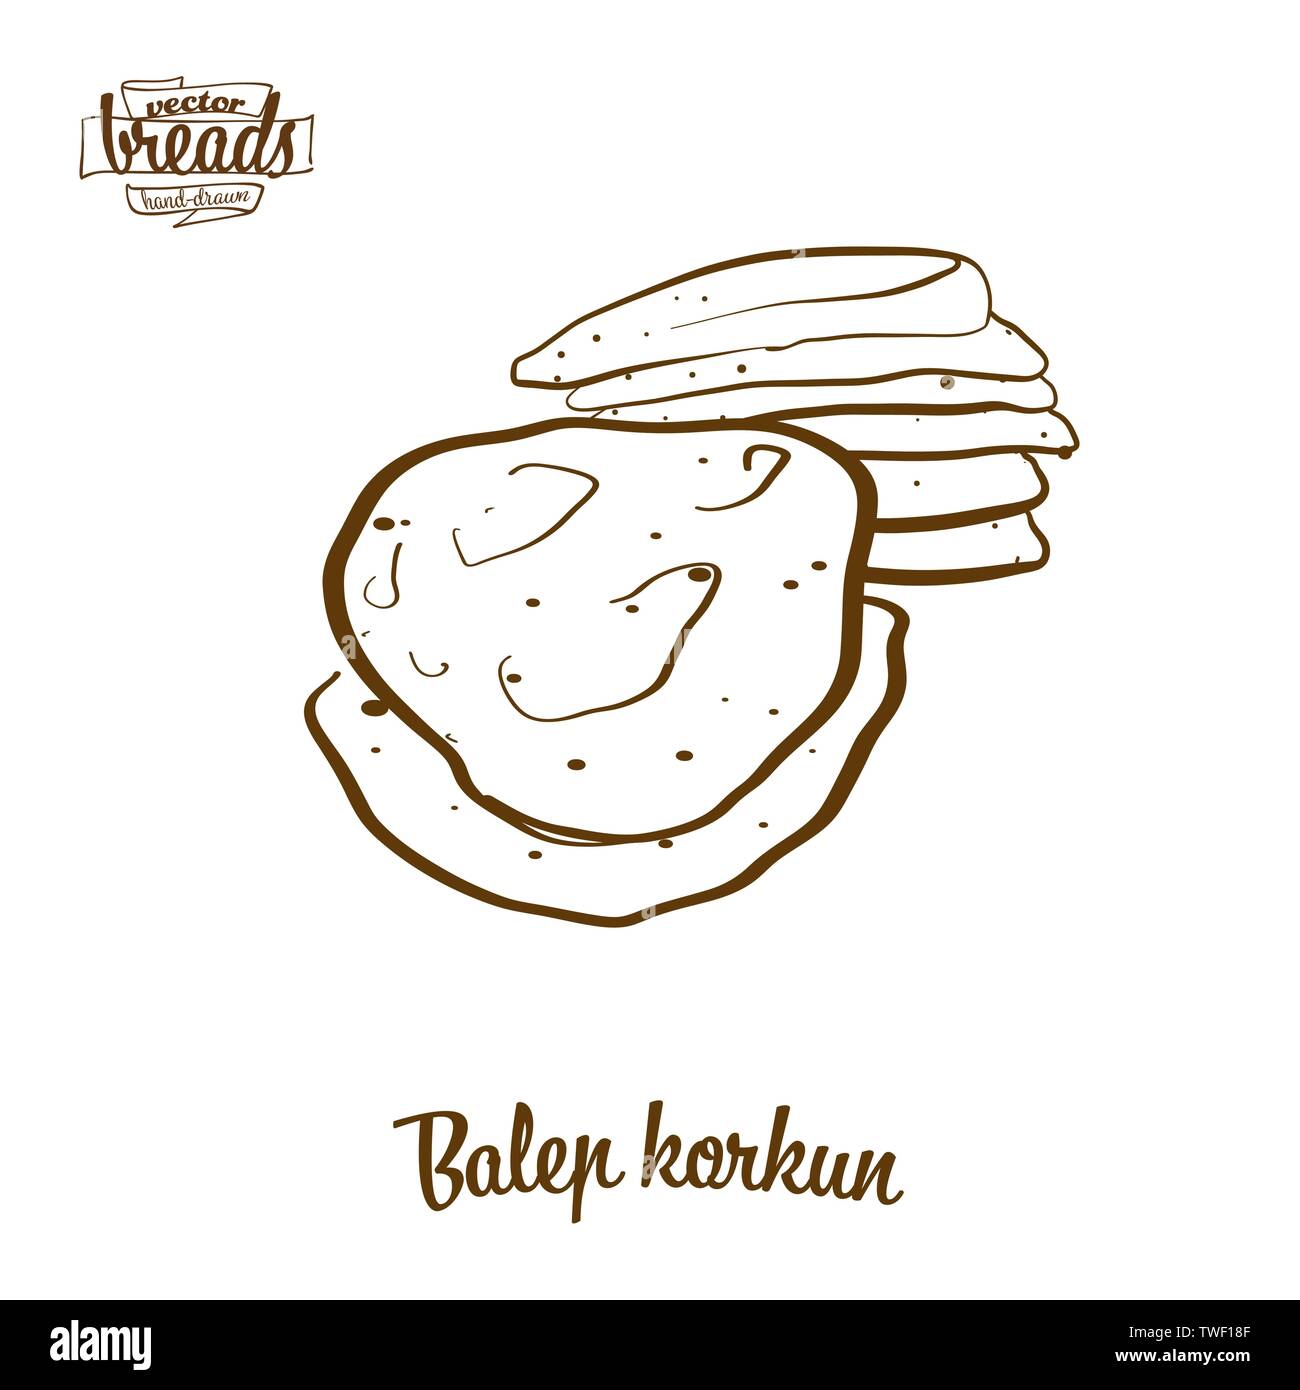 Korkun Balep pane disegno vettoriale. Schizzo di cibo di focacce, usualmente noto in Tibet. Illustrazione da forno serie. Illustrazione Vettoriale